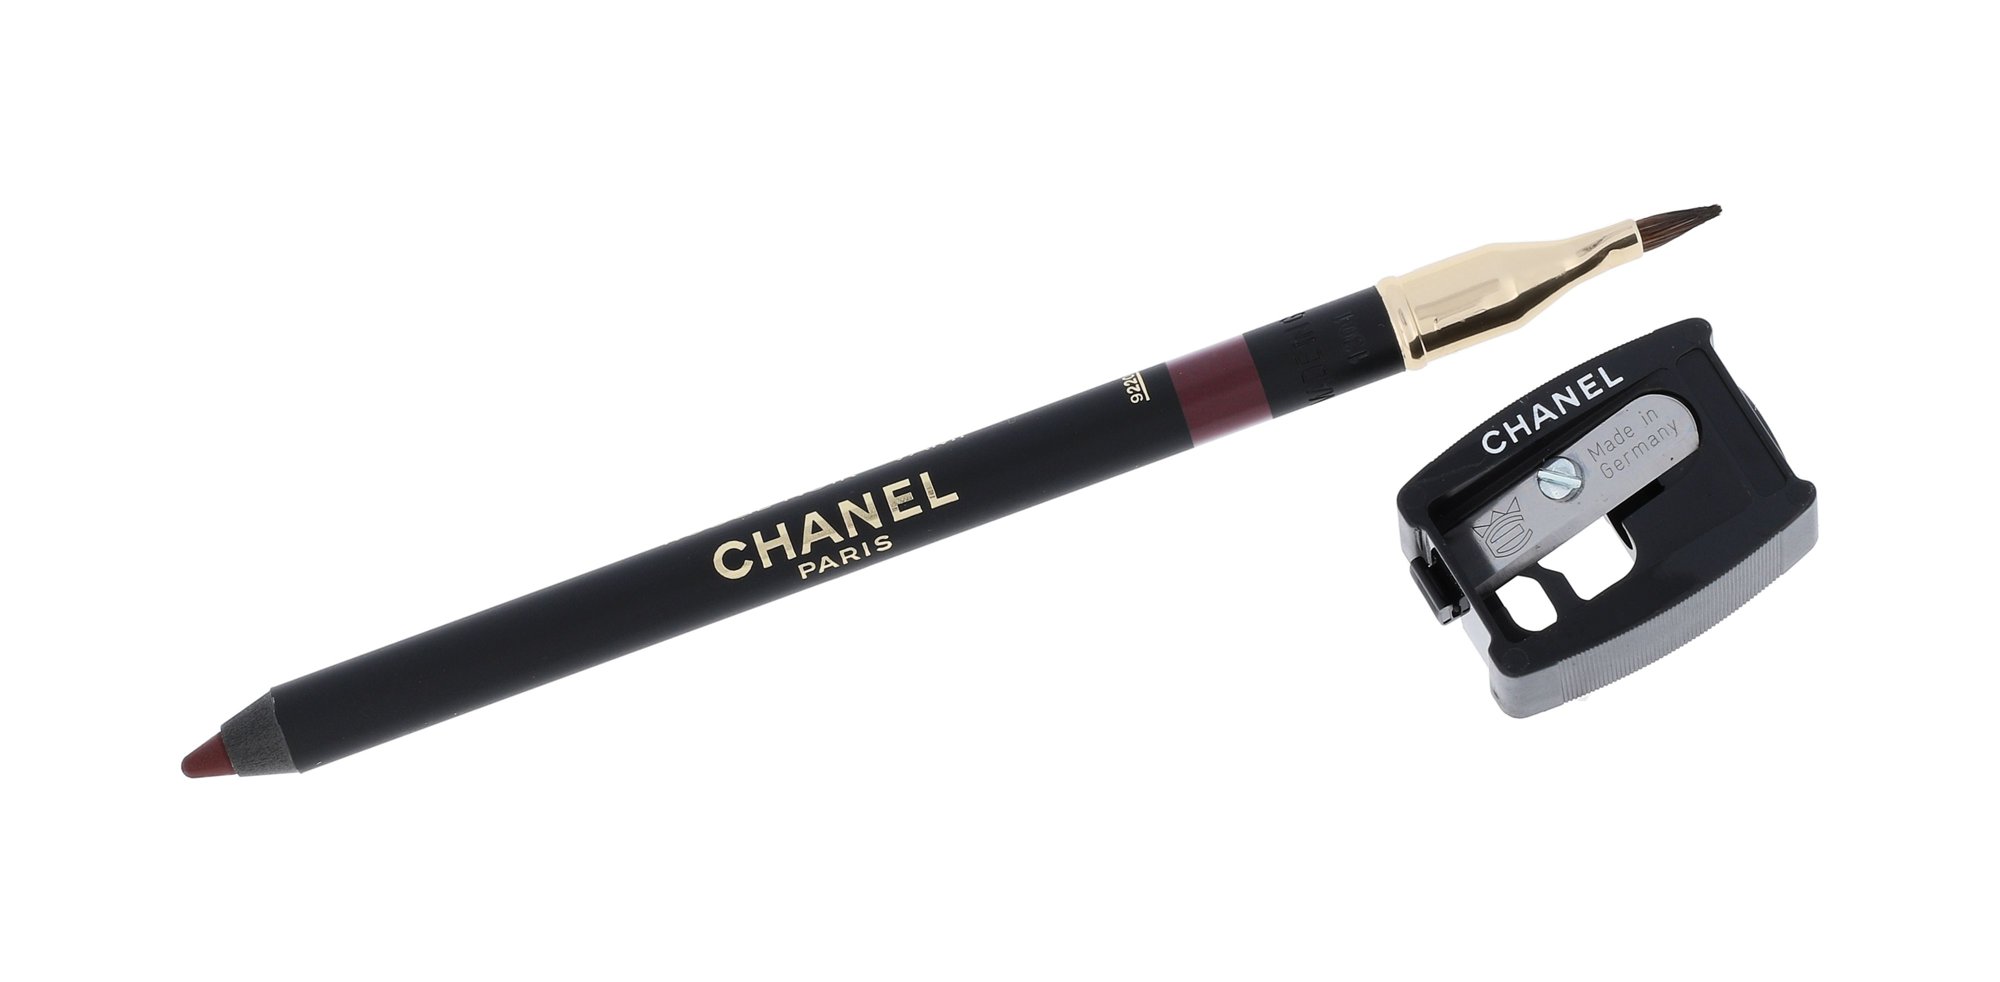 Chanel Le Crayon Levres lūpų pieštukas